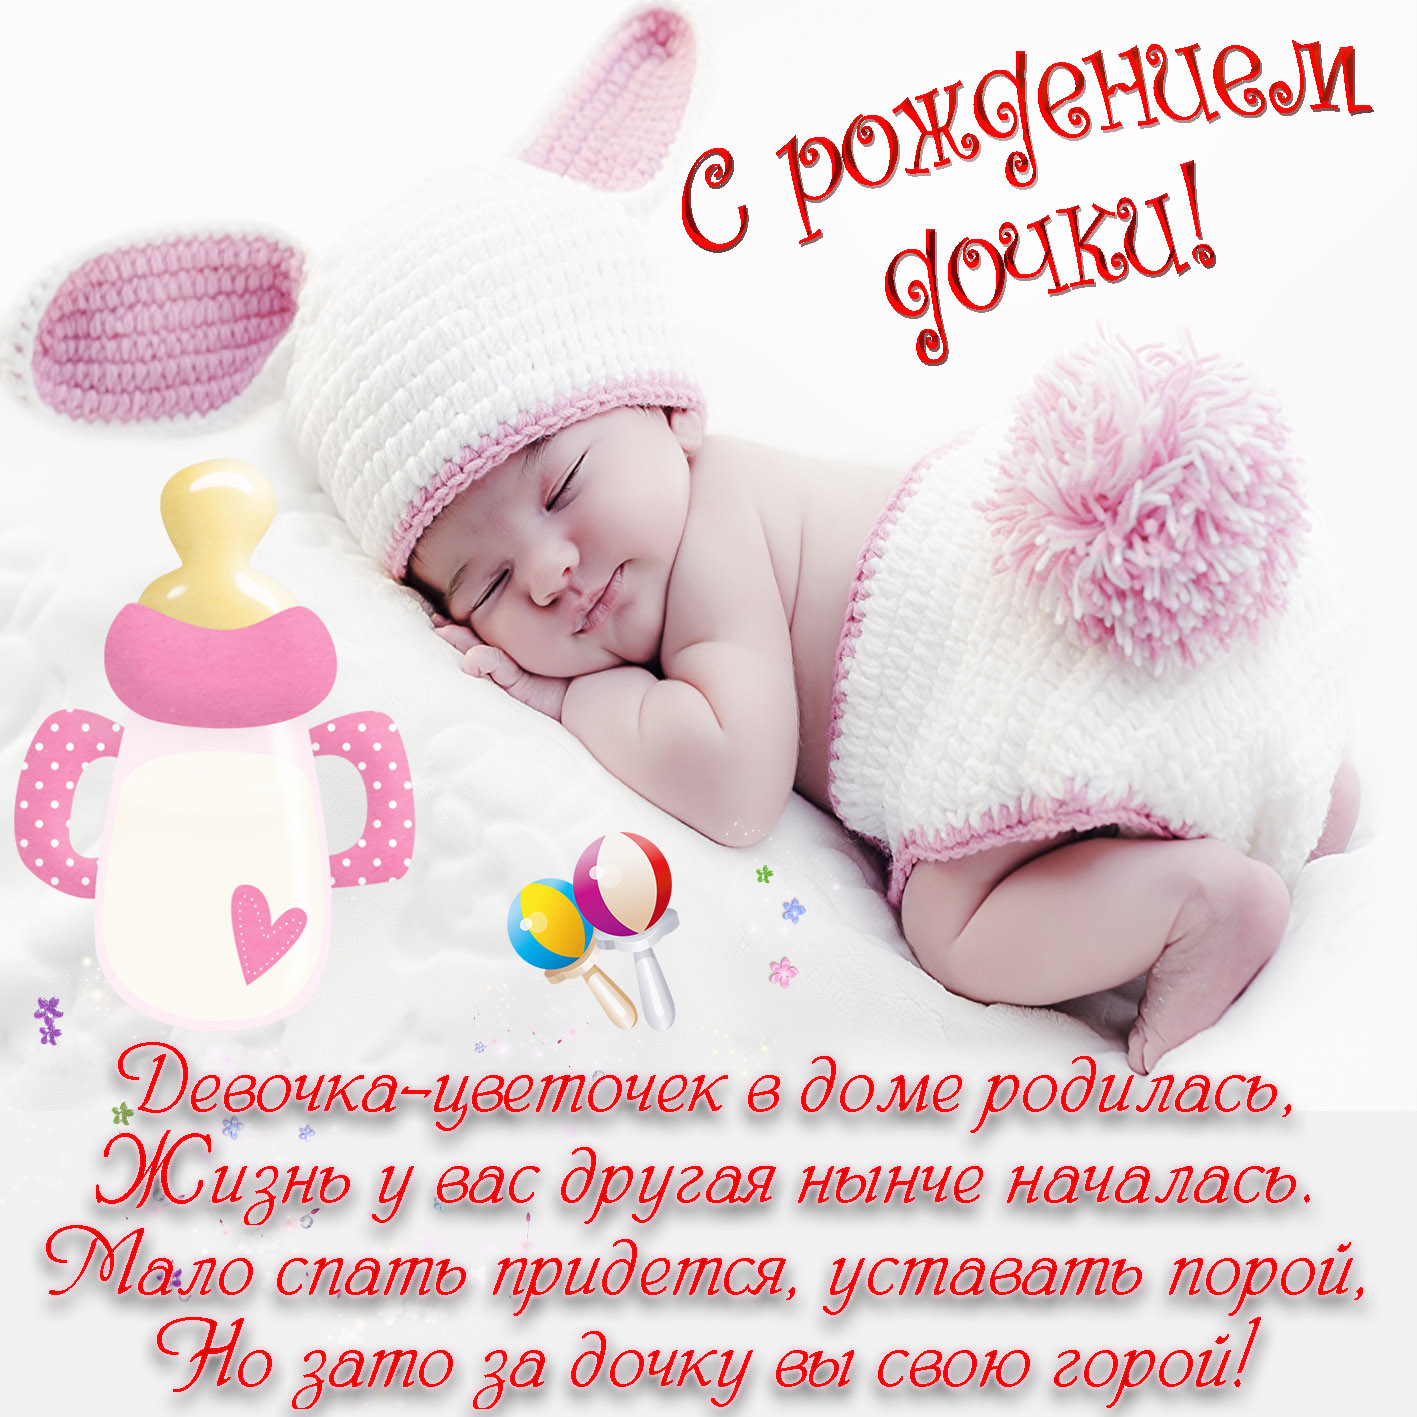 Открытка картинка с новорожденной девочкой,дочкой,поздравления Открытка картинка открытки картинки с новорождённой,с новорождённой девочкой,дочкой,открытка картинка розовый цвет с новорождённой,поздравления с новорожденной.